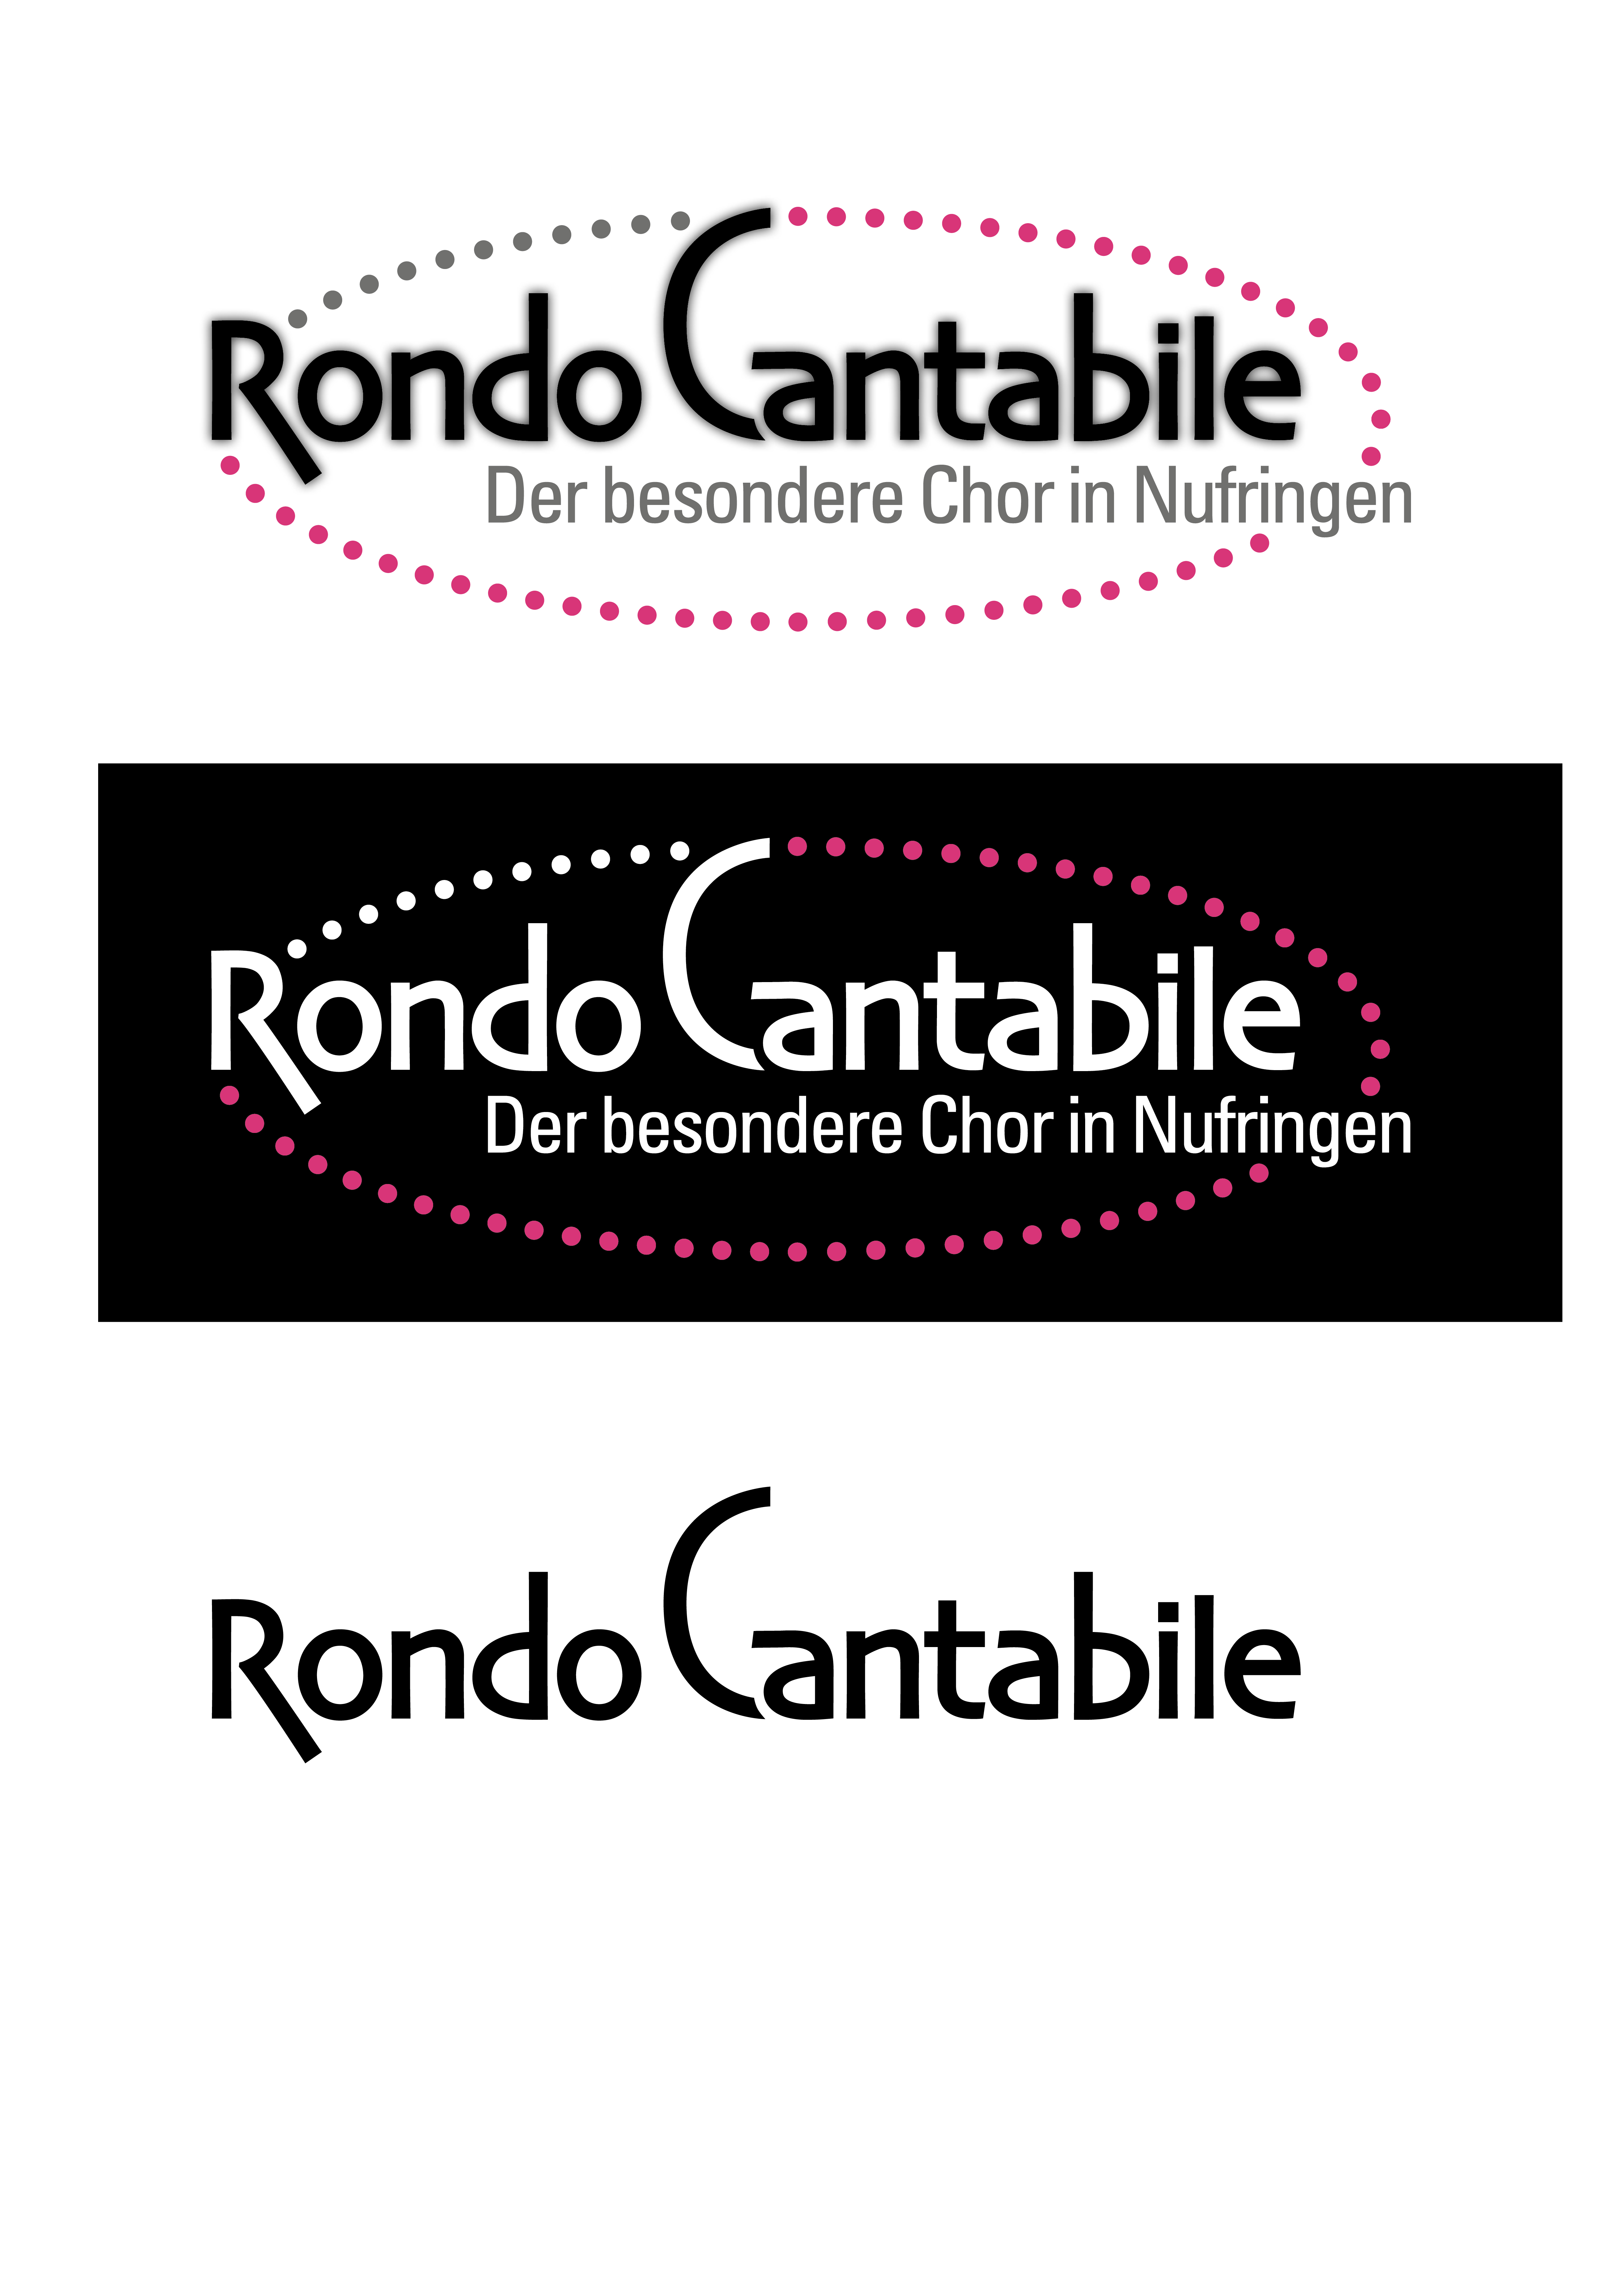 Logo_Rondo_Cantabile